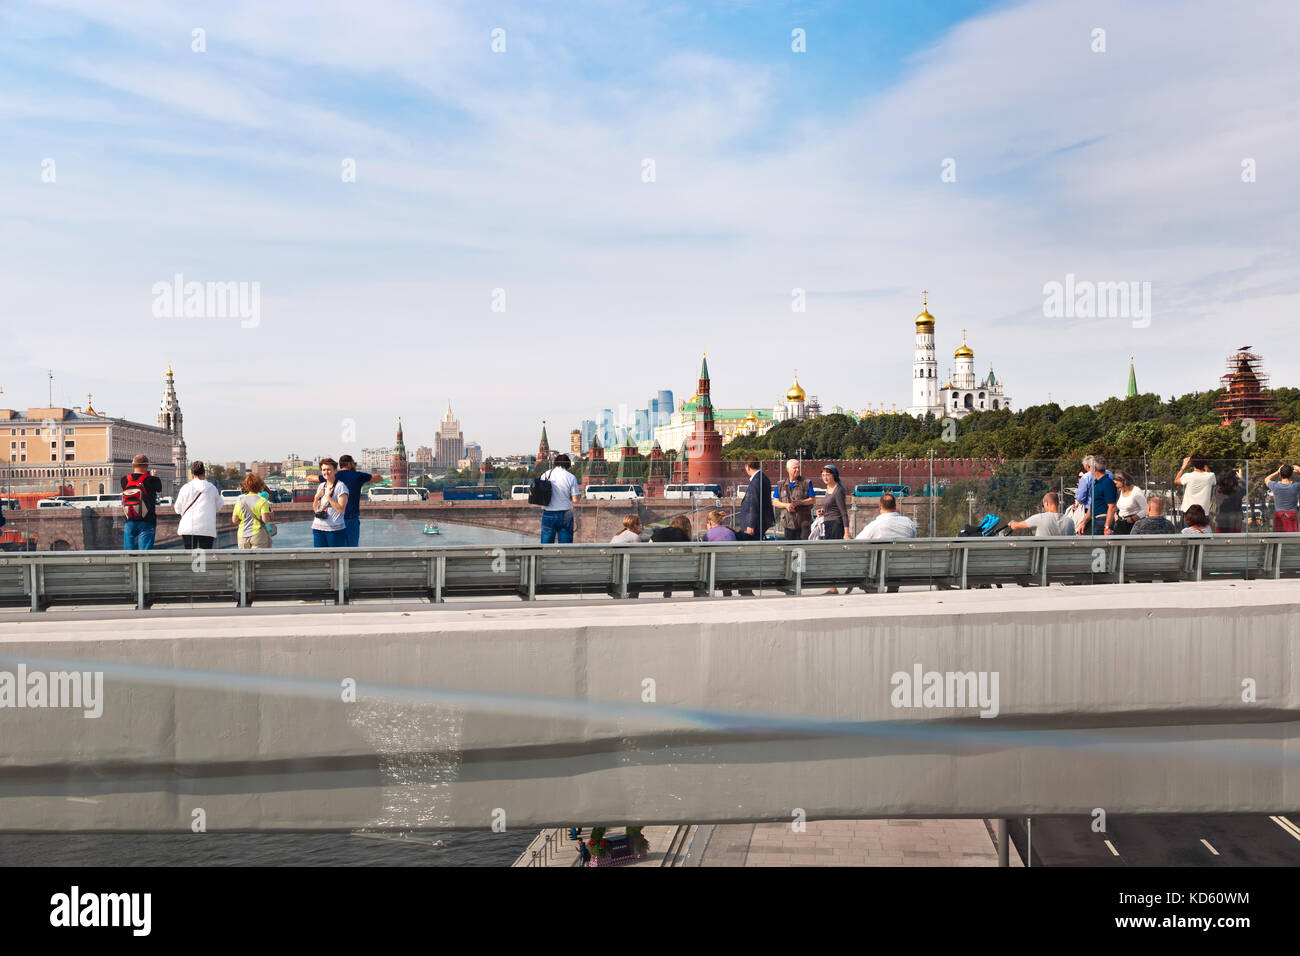 La gente che prende le immagini del paesaggio urbano di mosca sul ponte galleggiante nel nuovo parco zaryadye, parco urbano situato nei pressi di piazza Rossa di Mosca, Russia Foto Stock